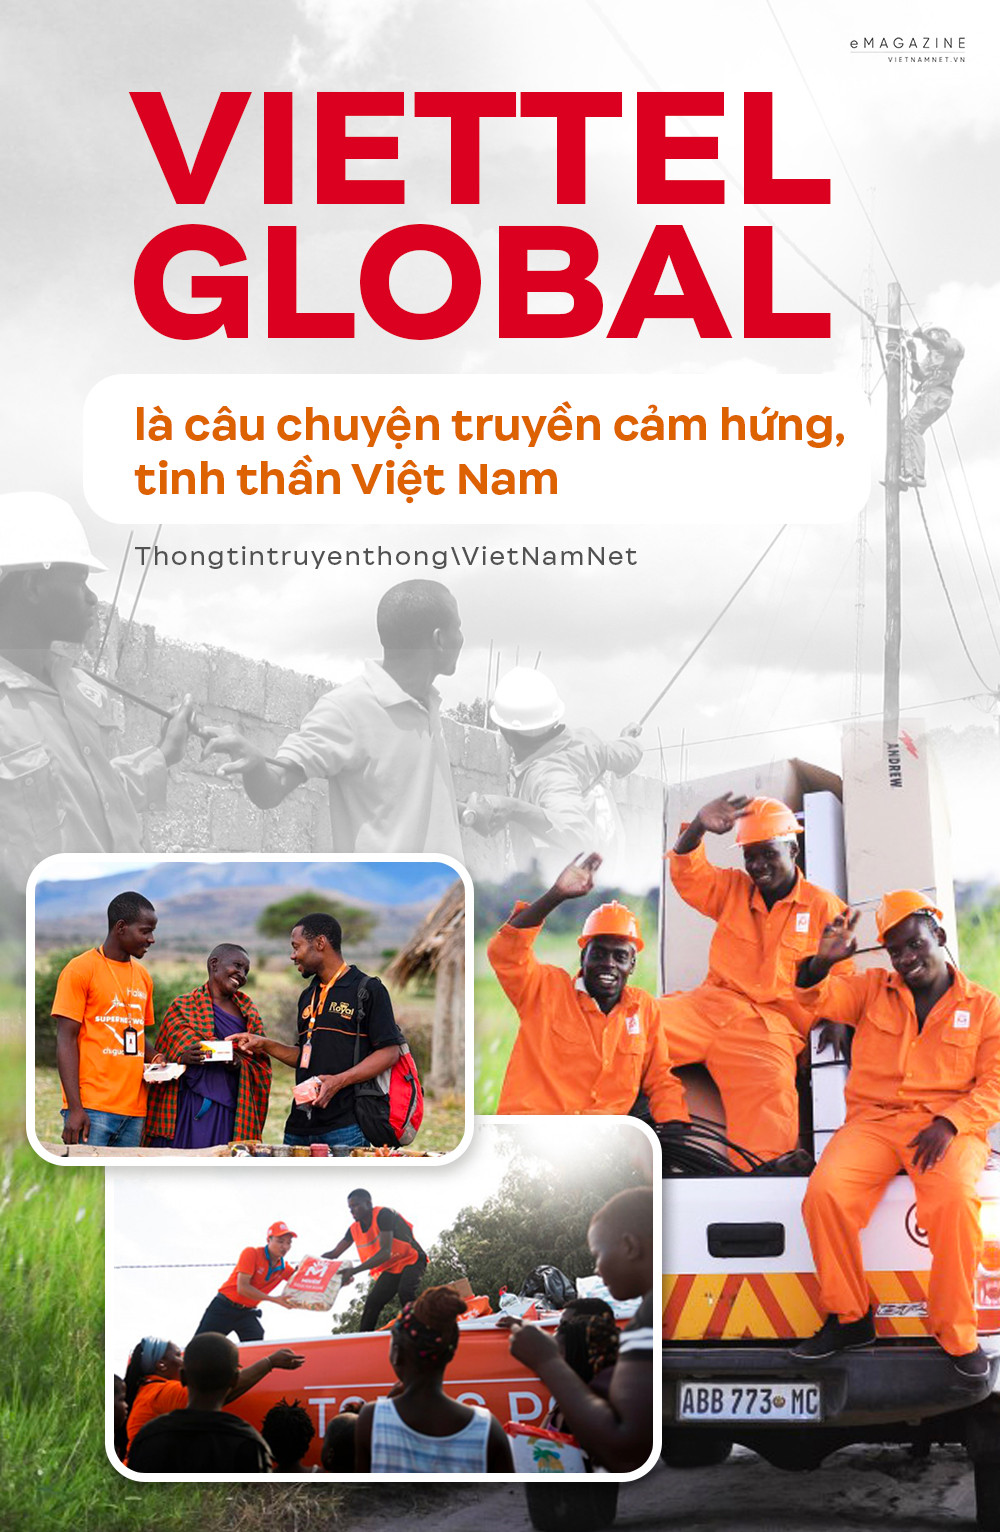 View - Viettel Global là câu chuyện truyền cảm hứng, tinh thần Việt Nam 